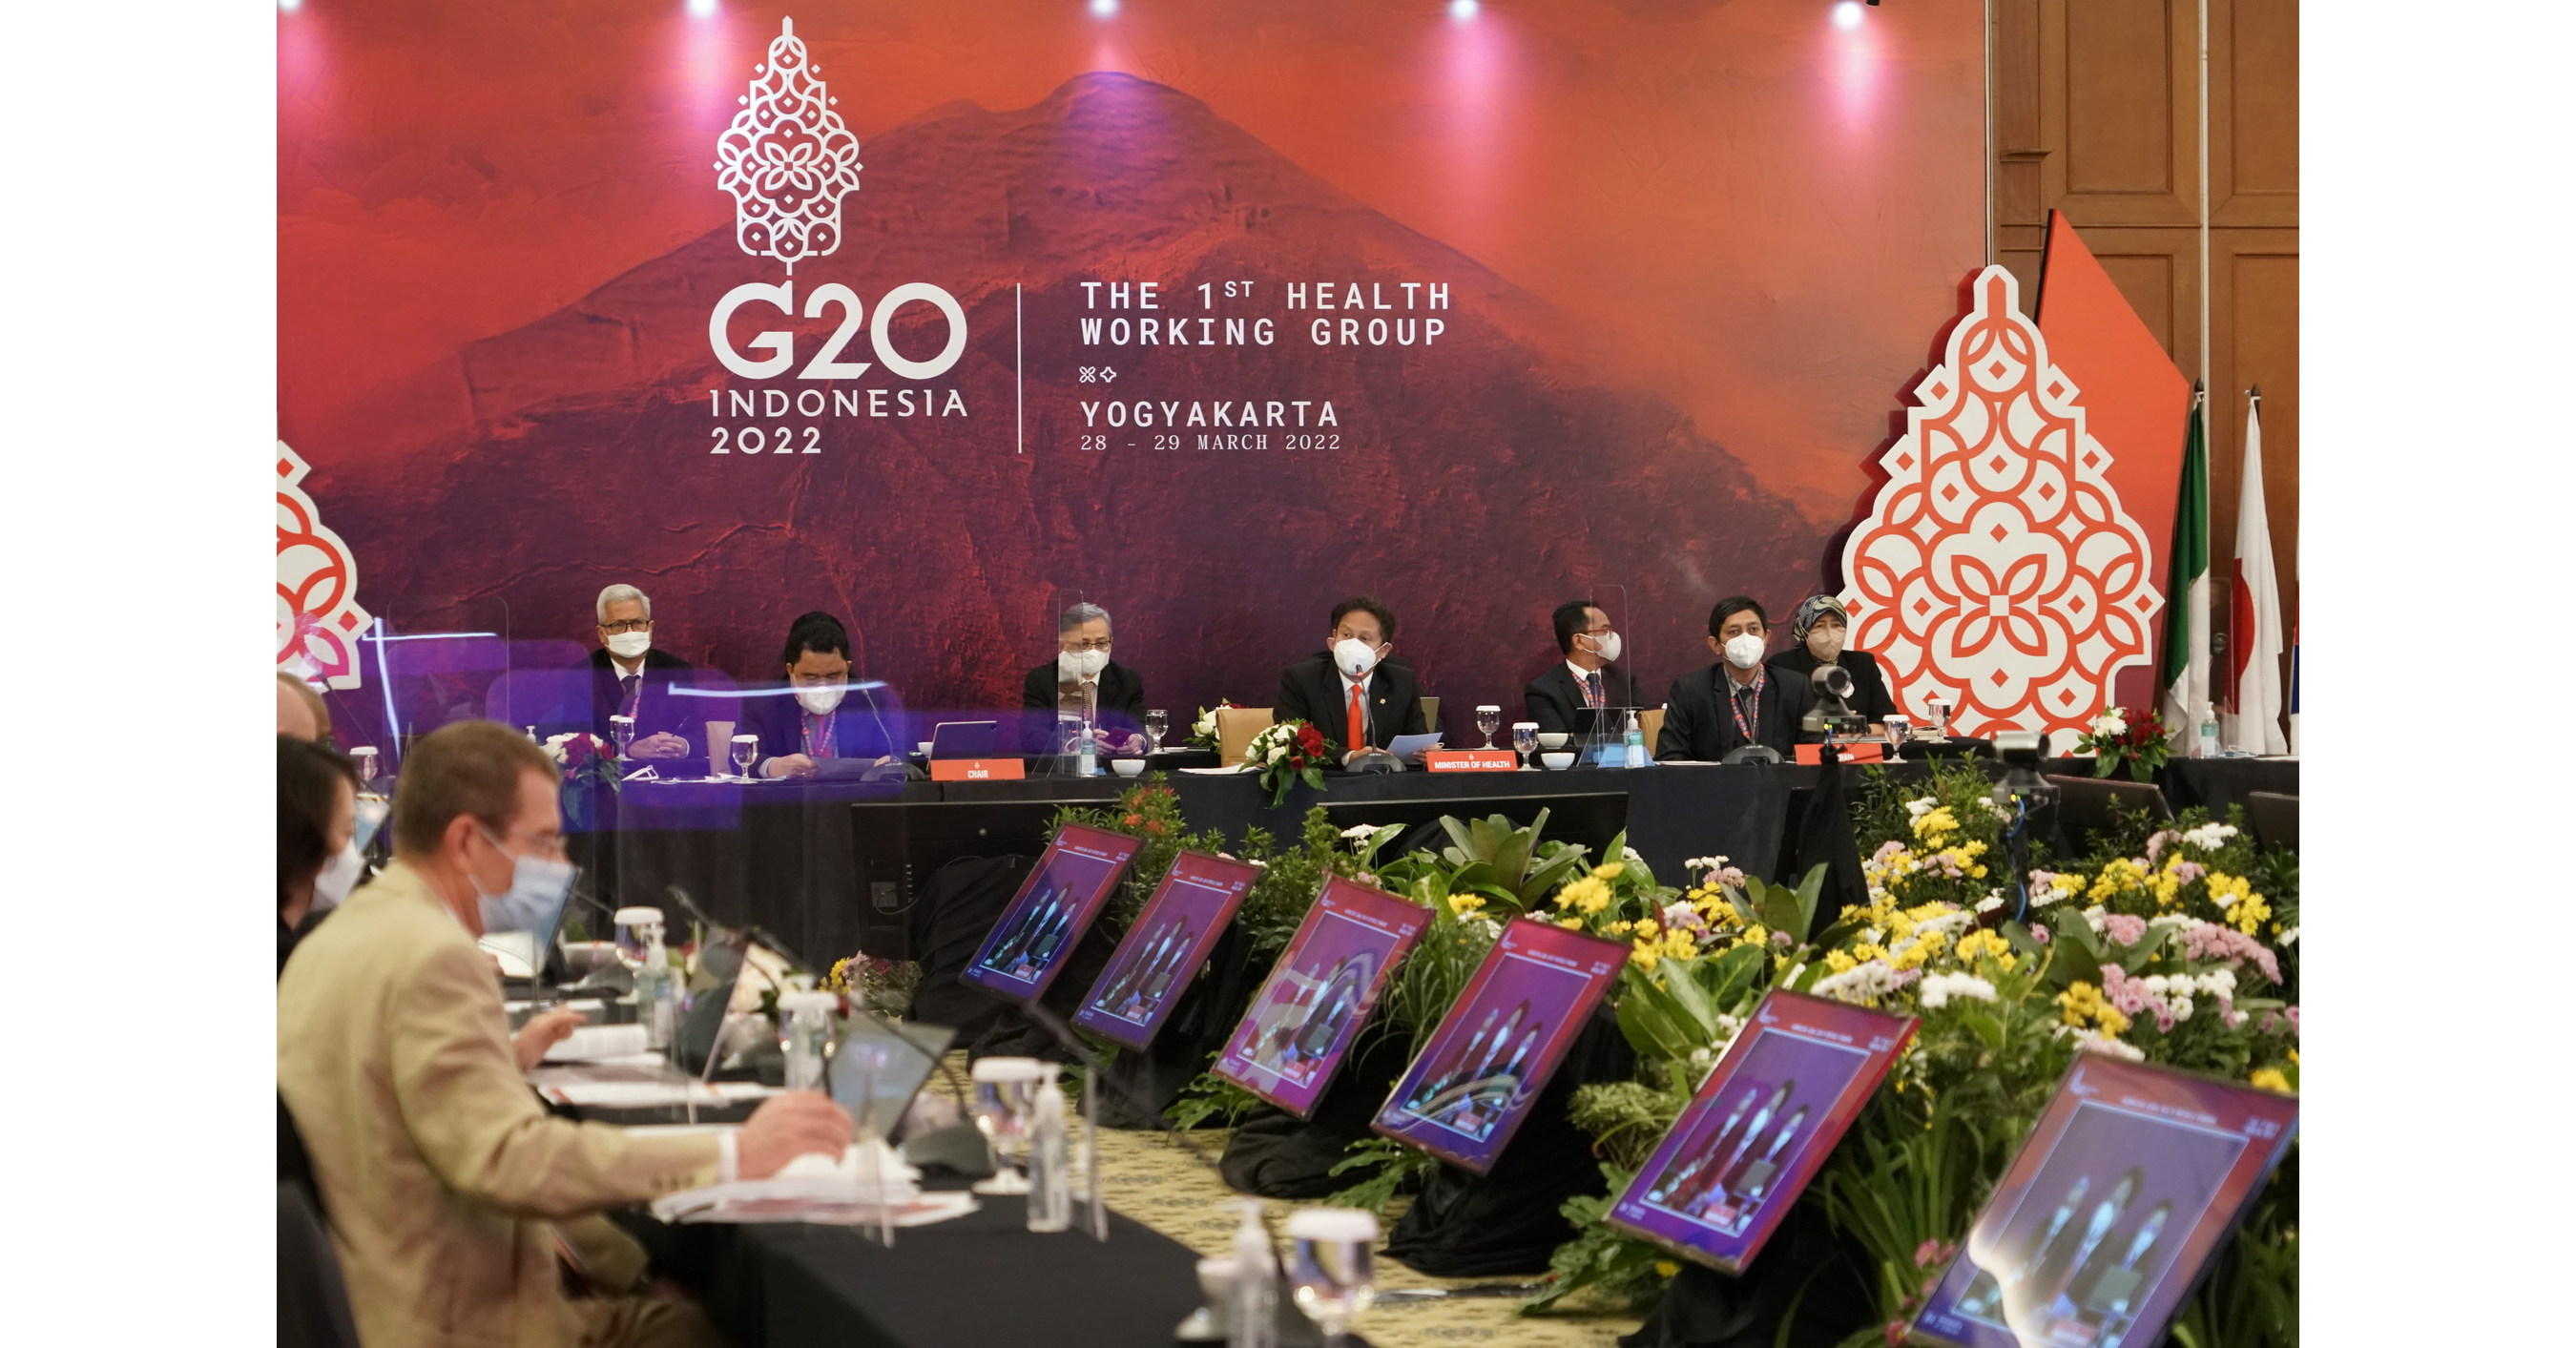 Peluncuran Paspor Vaksin Diakui Dunia, Rangkaian Pertemuan HWG G20 Indonesia Sambut Lebih Banyak Pengunjung Internasional